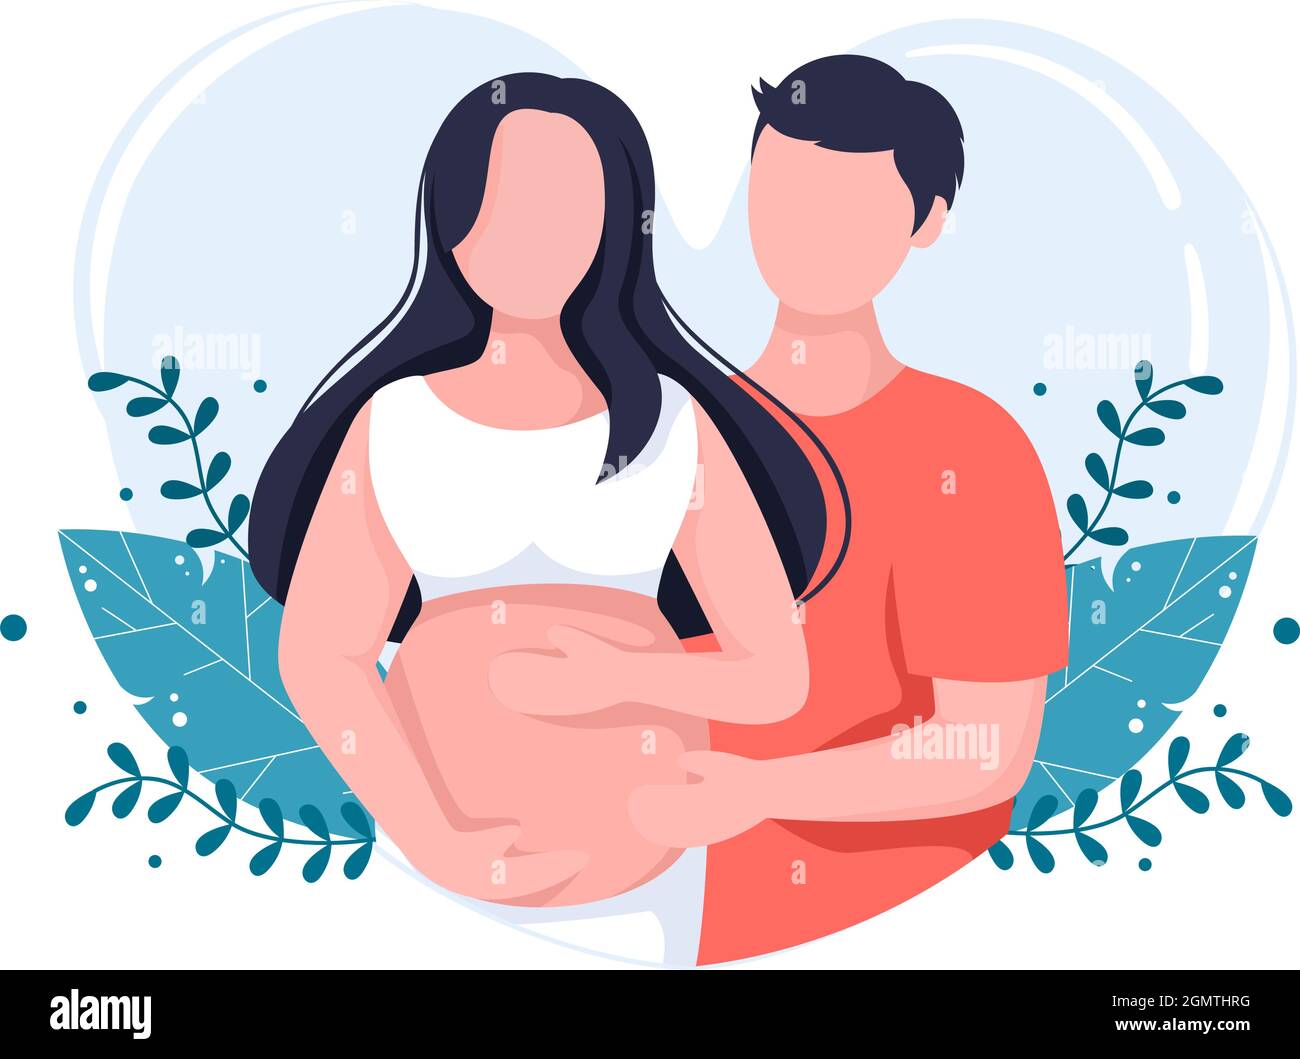 Schwanger Paar Hintergrund Vektor Illustration mit Einem Mann nimmt Pflege und Hugs seine Frau oder Mutter während warten auf Geburt in Flat Design Style Stock Vektor